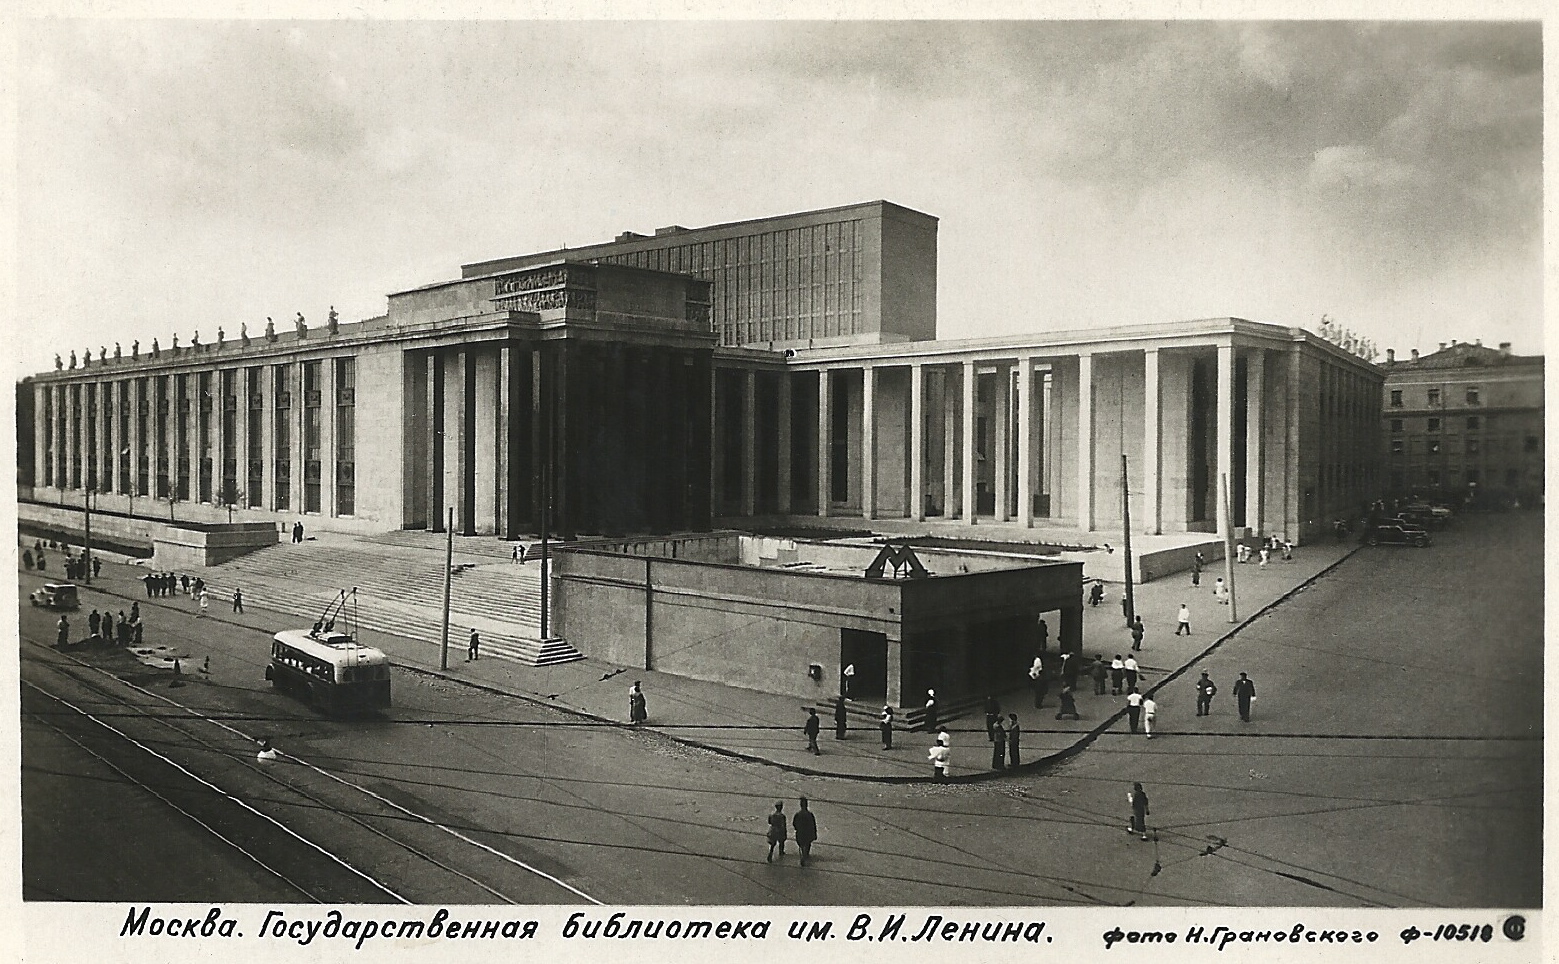 Rosyjska Biblioteka Państwowa w Moskwie